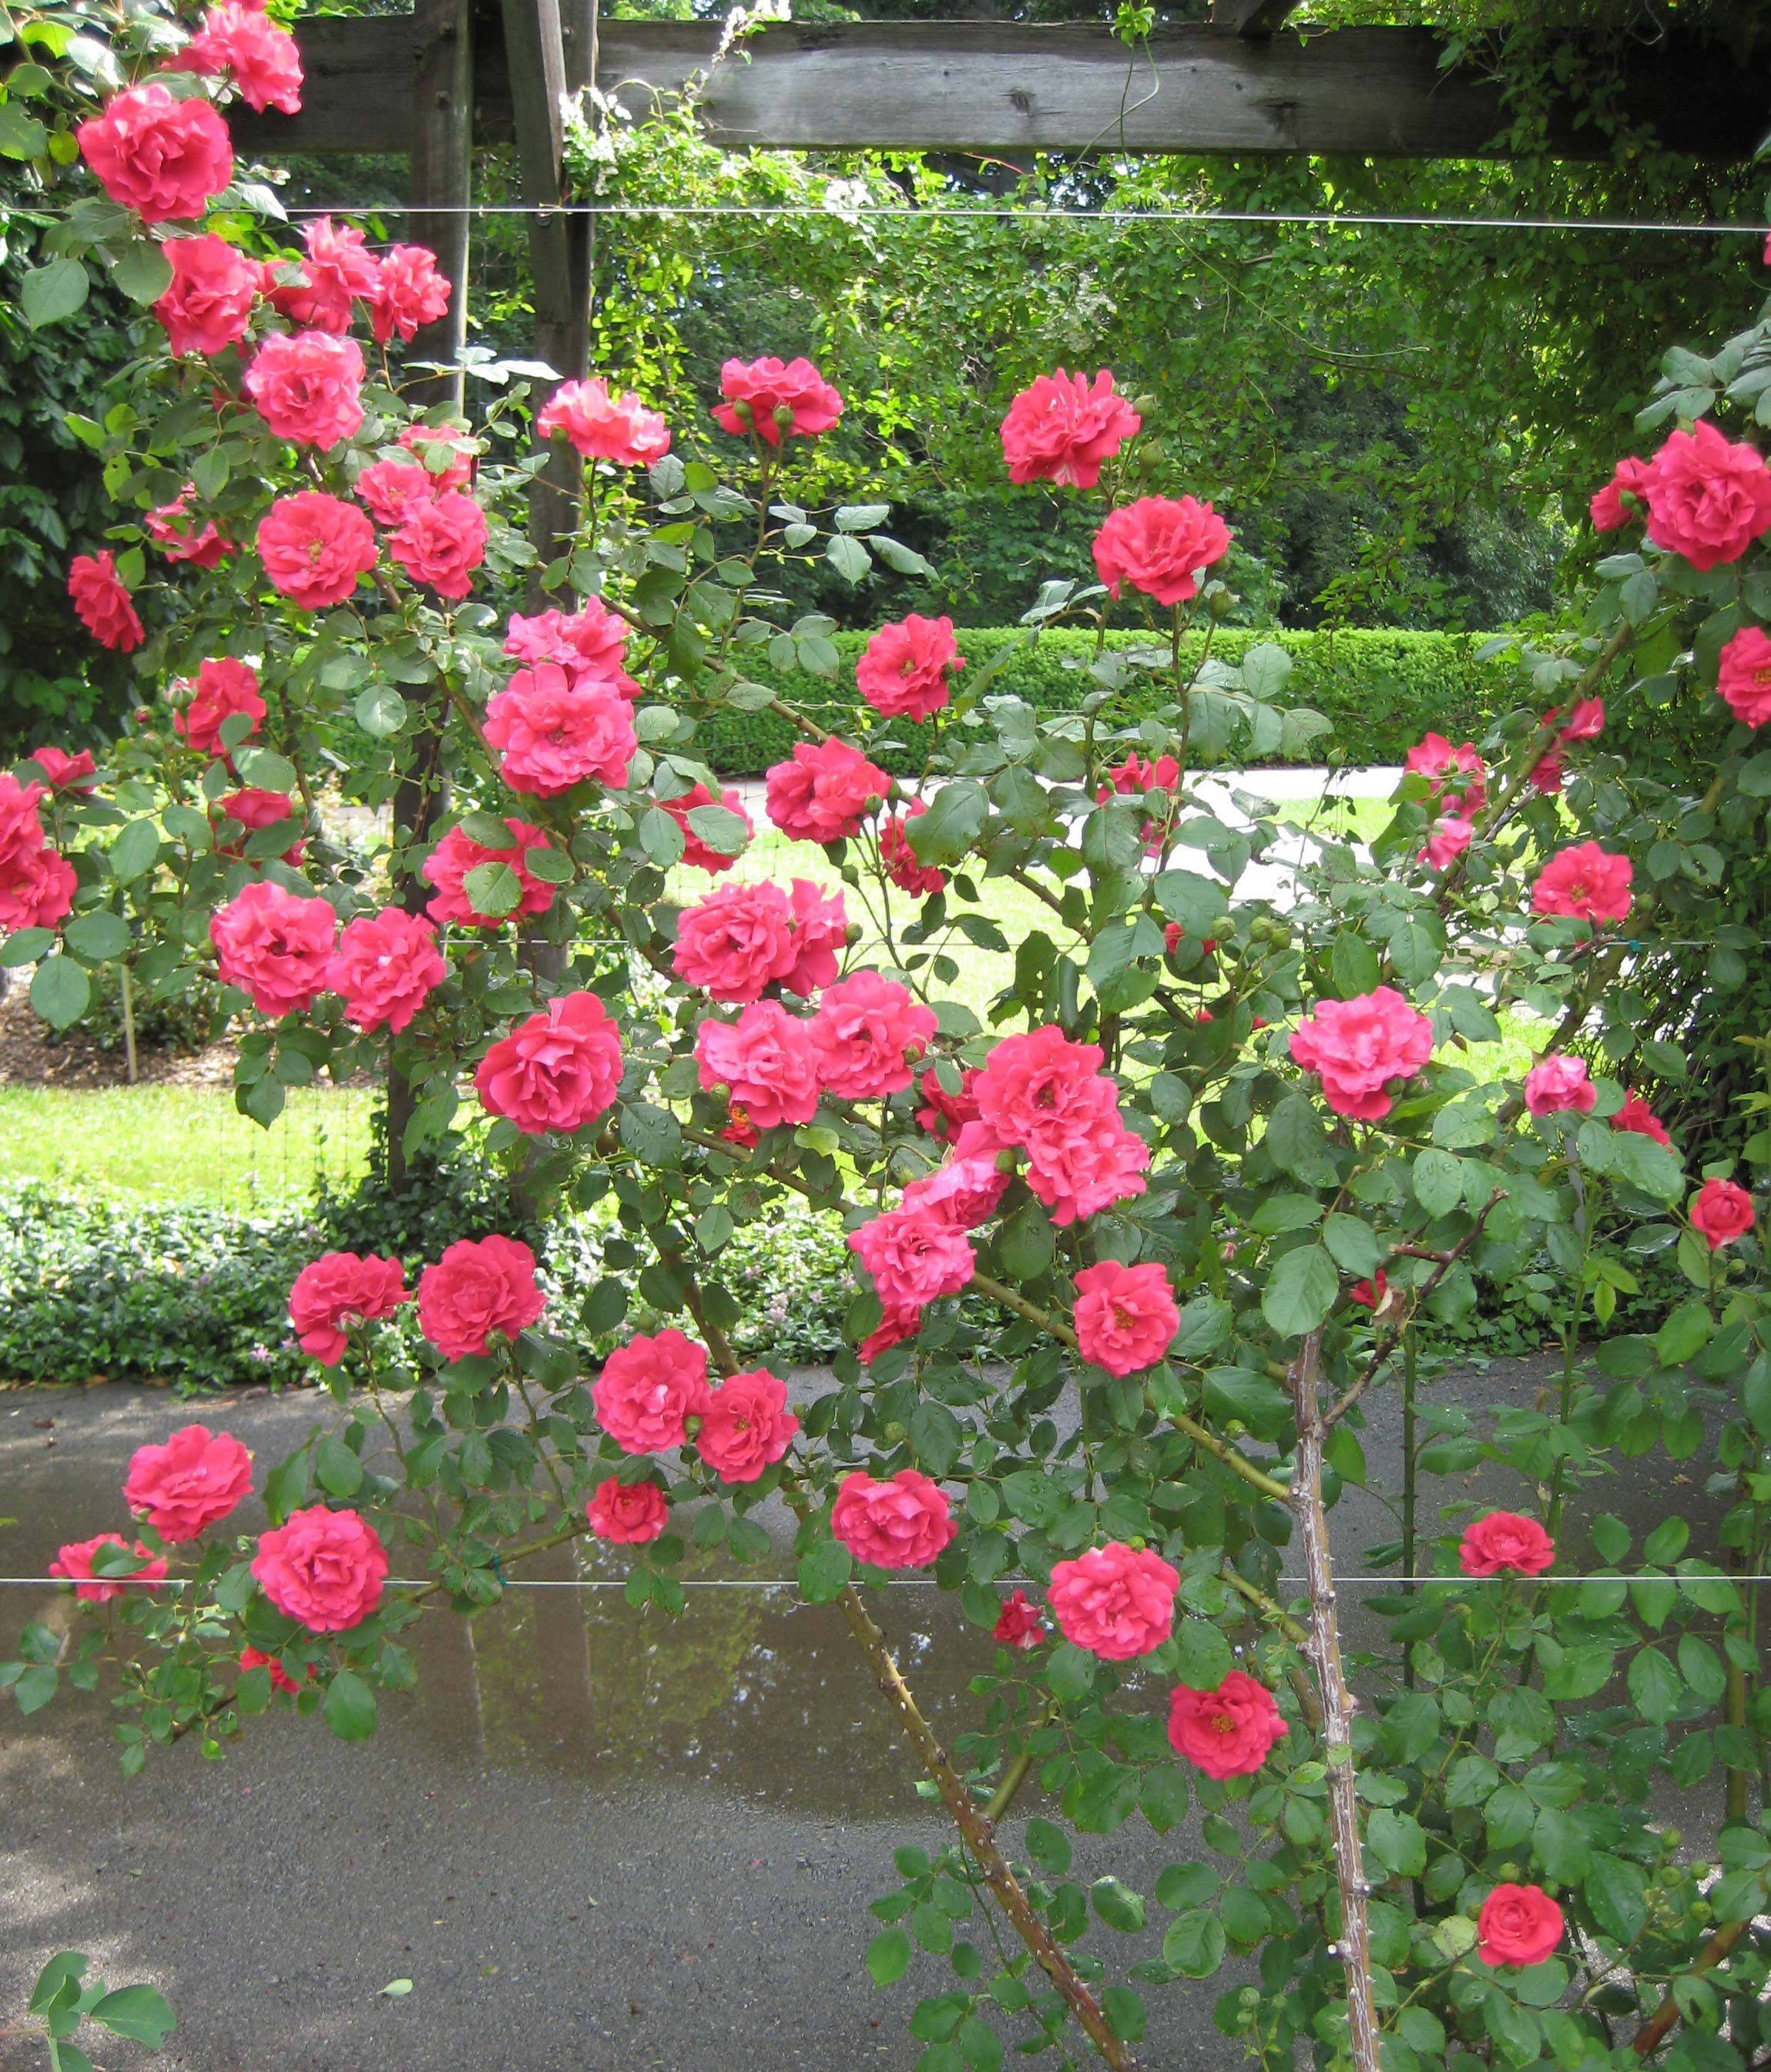 О розе palais royal: описание и характеристики, выращивание сорта плетистой розы